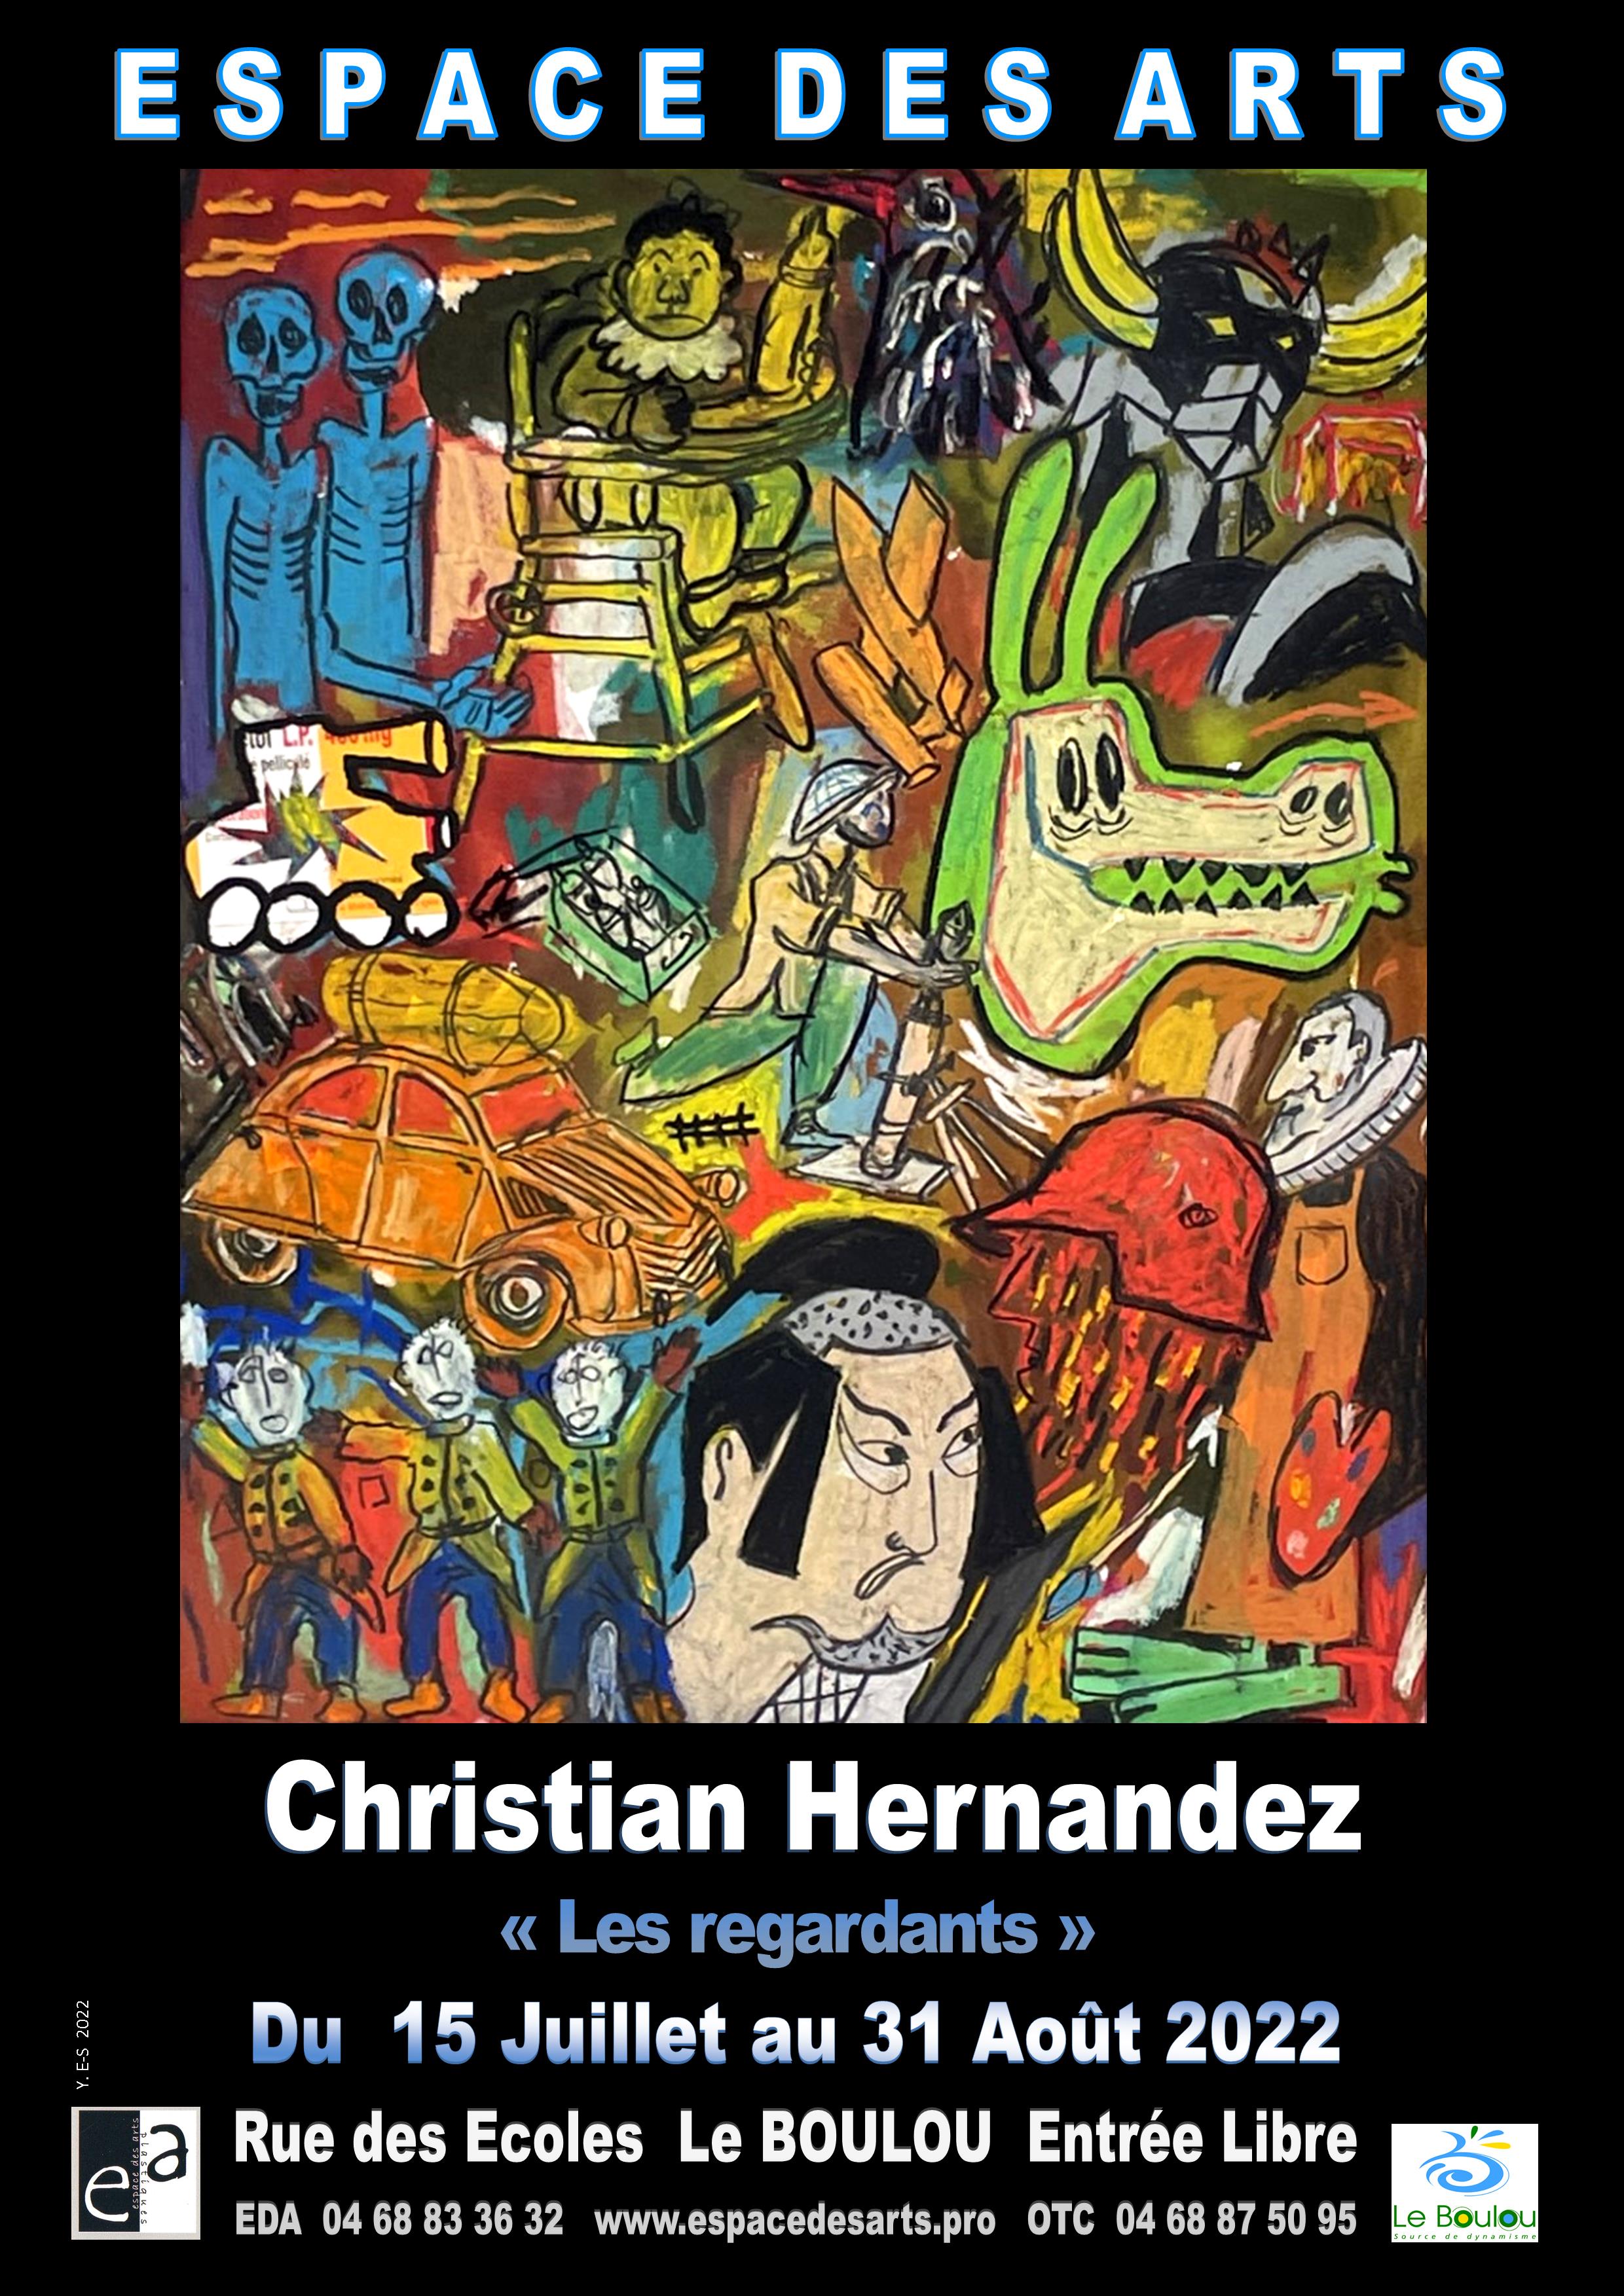 VERNISSAGE DE L'EXPOSITION "LES REGARDANTS" DE CHRISTIAN HERNANDEZ